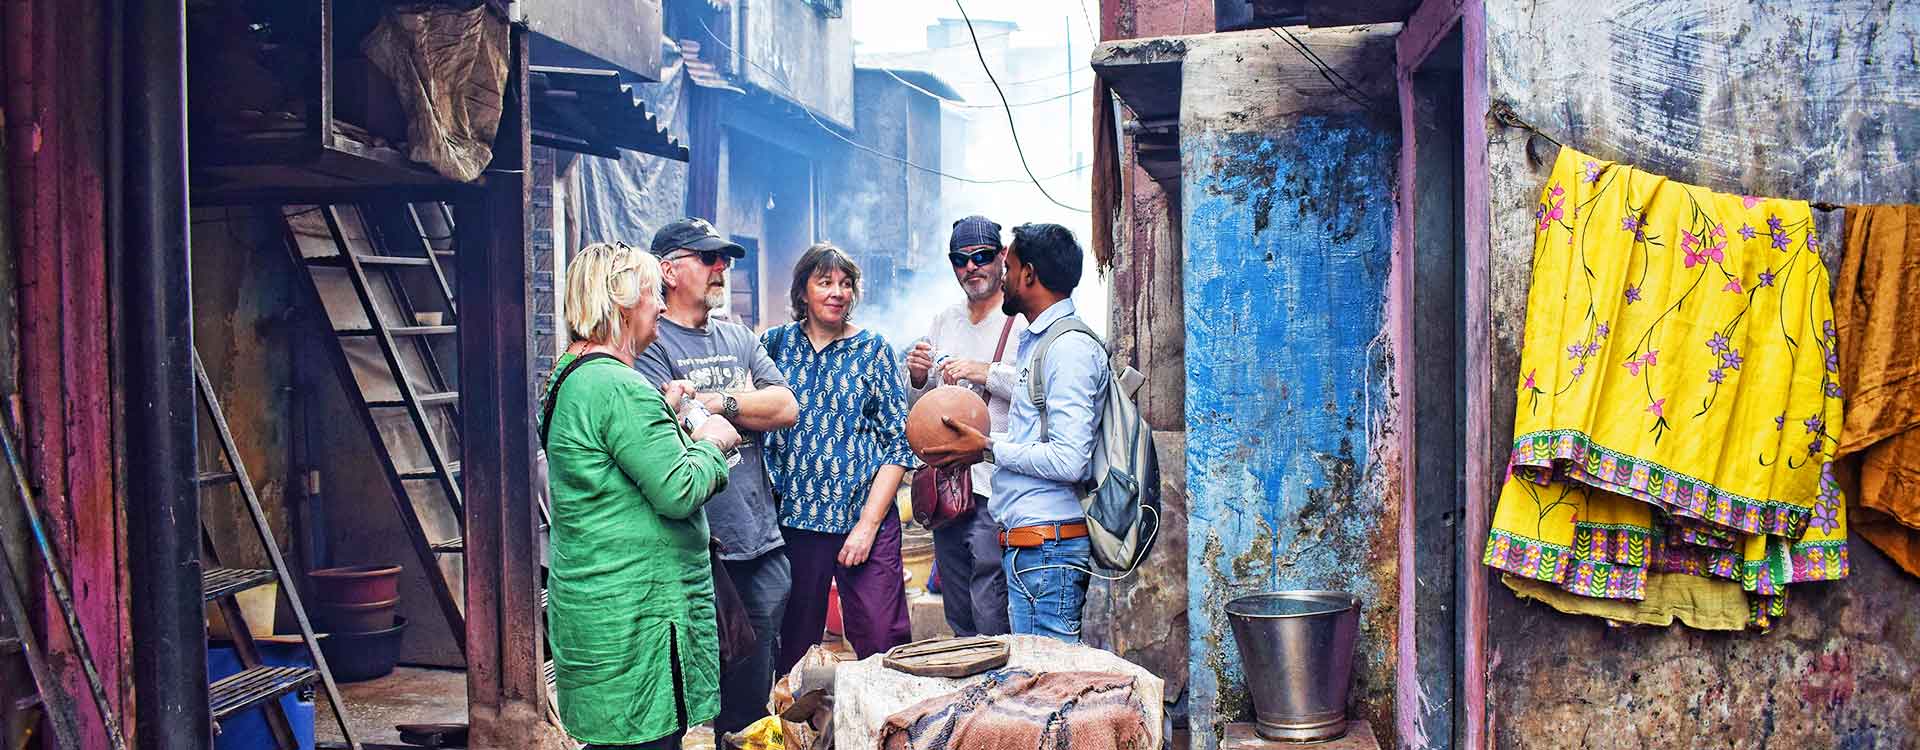 tour of mumbai slums